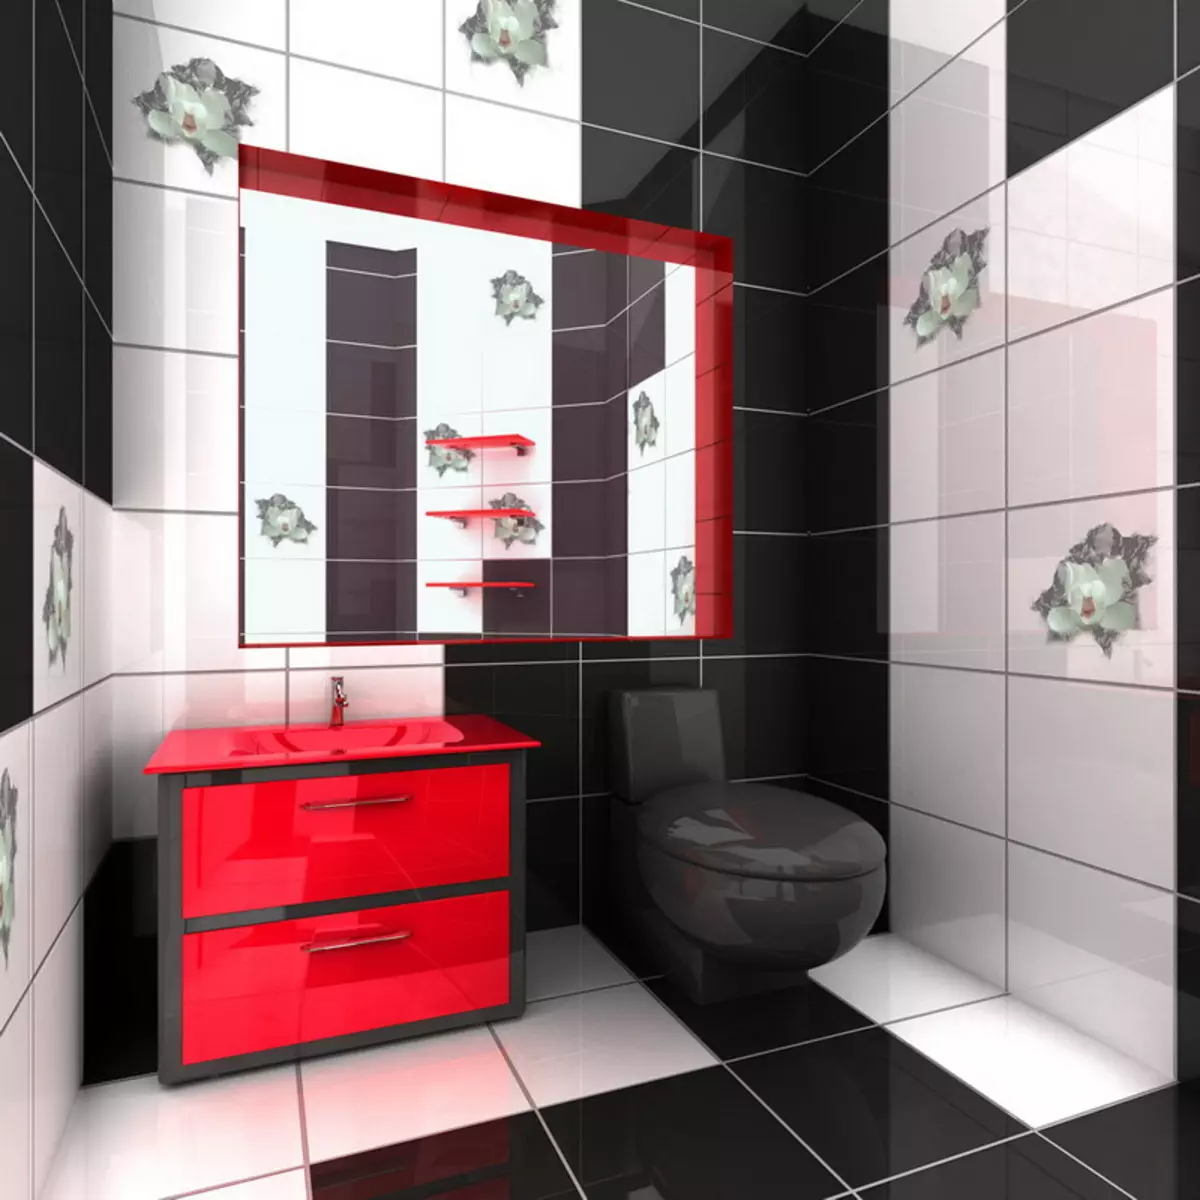 काळा शौचालय (67 फोटो): काळ्या आणि पांढर्या रंगात शौचालय डिझाइन, एका अपार्टमेंटमध्ये गडद रंगाचा शौचालय निवड, काळा आणि लाल टाइलसह समाप्त करणे 10501_15